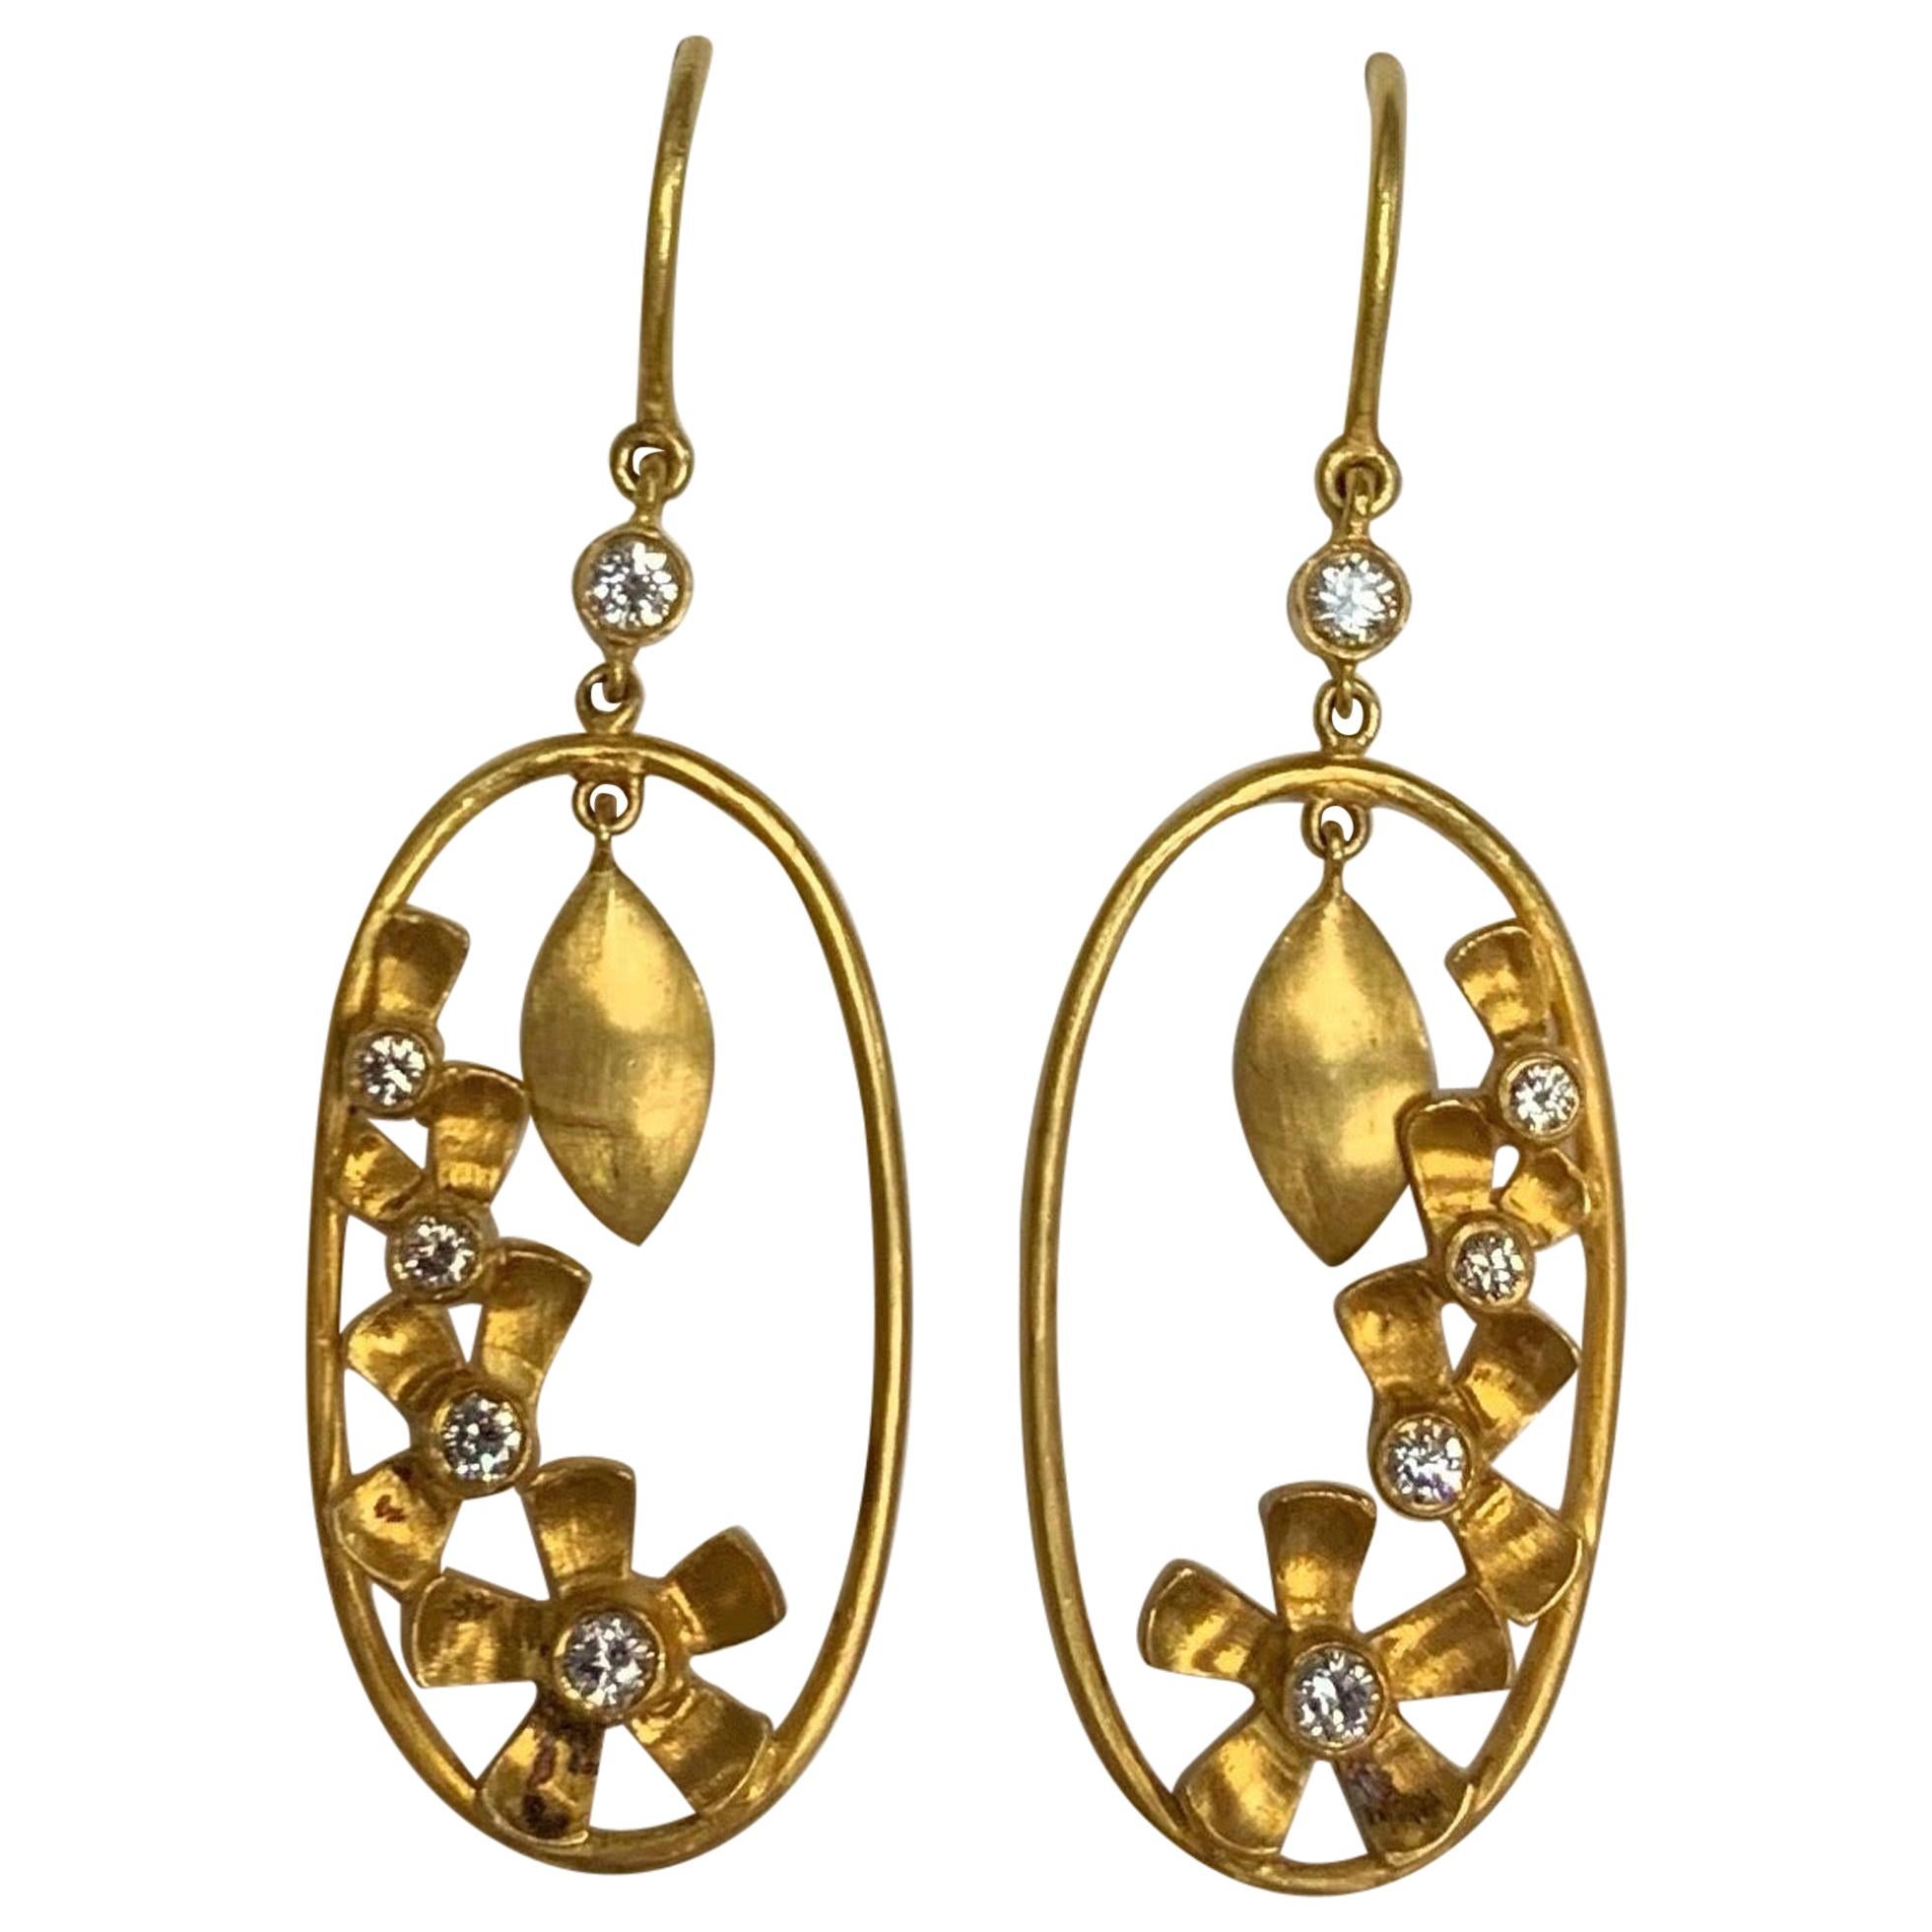 Flower Power Diamond Earrings, 18 Karat Yellow Gold, A2 by